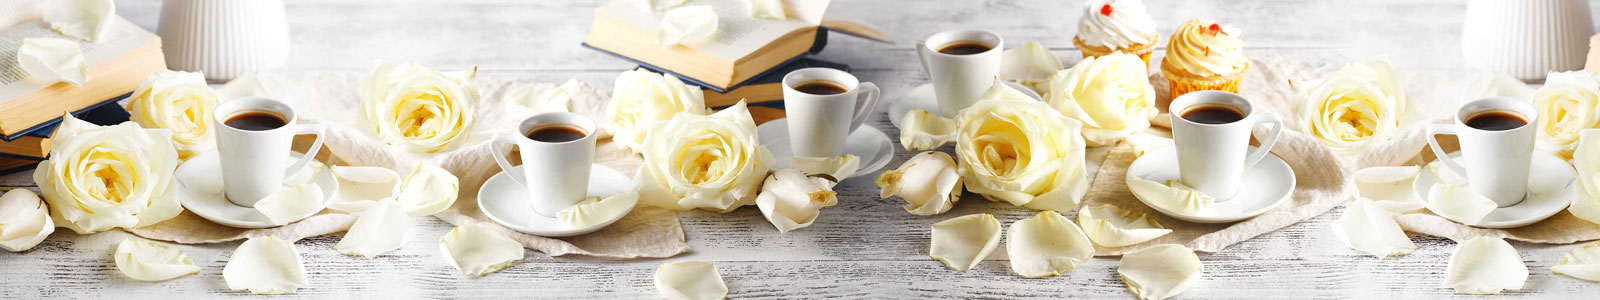 №6285 - Утренний кофе с книгами и лепестками свежих роз